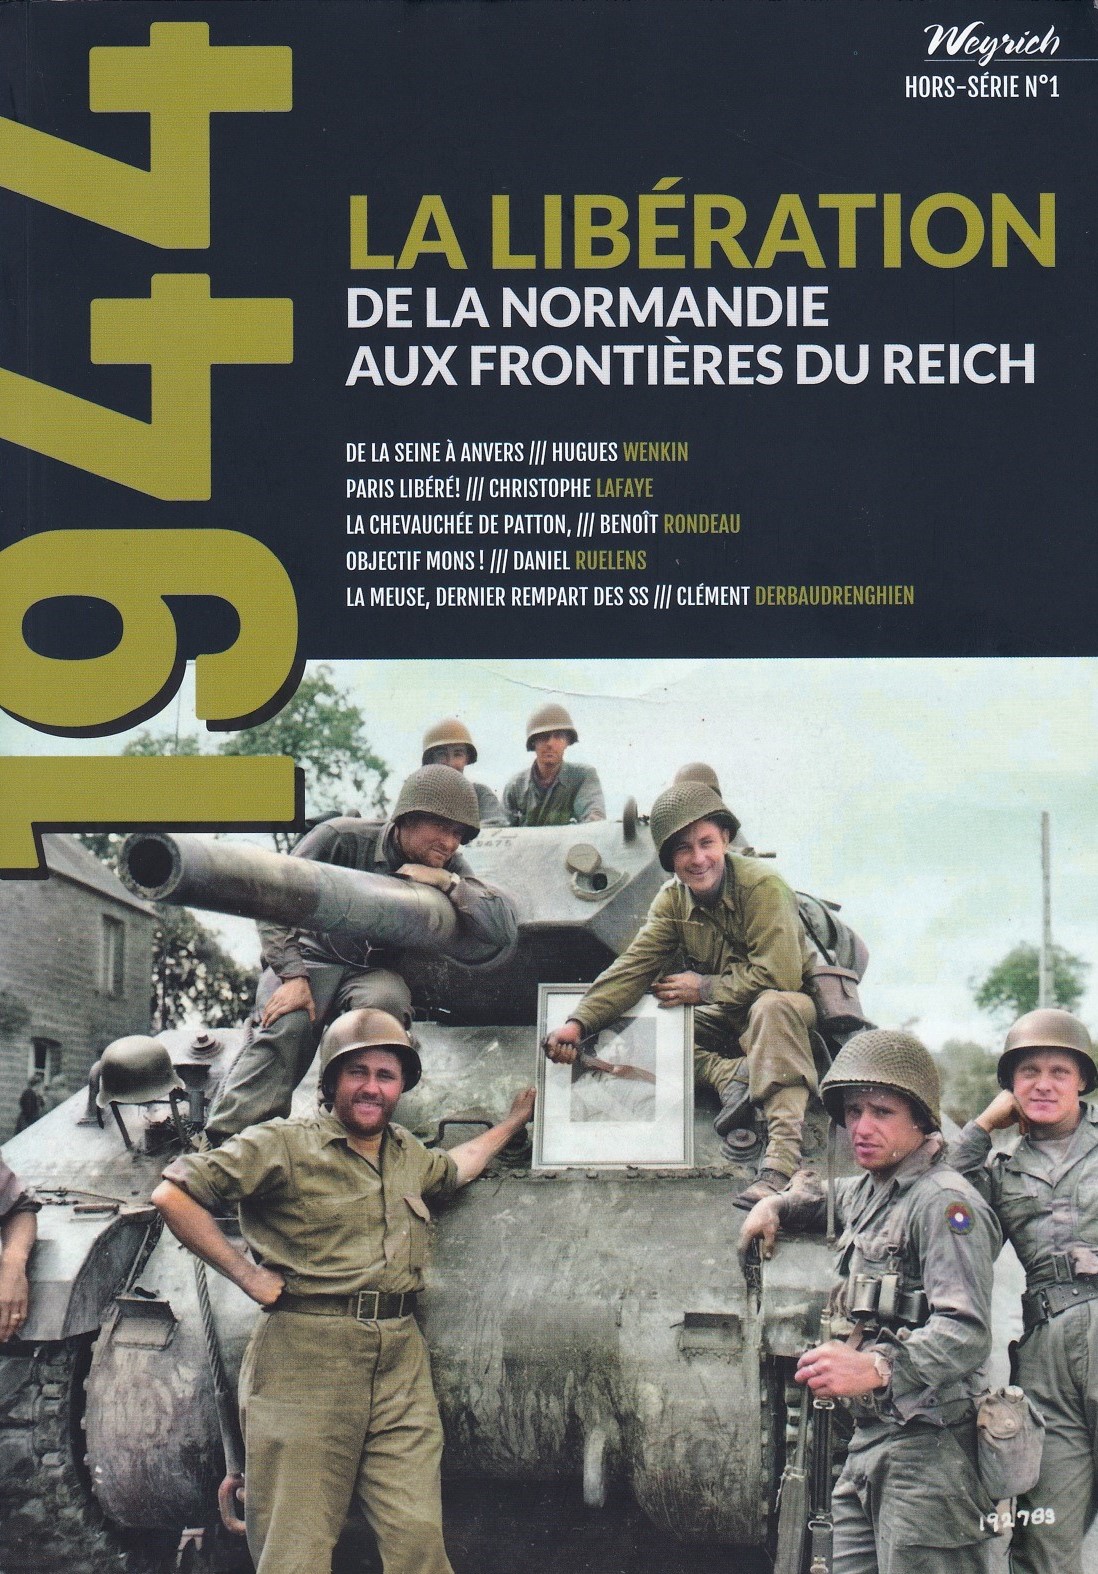 1944, la Libération de la Normandie aux frontières du Reich